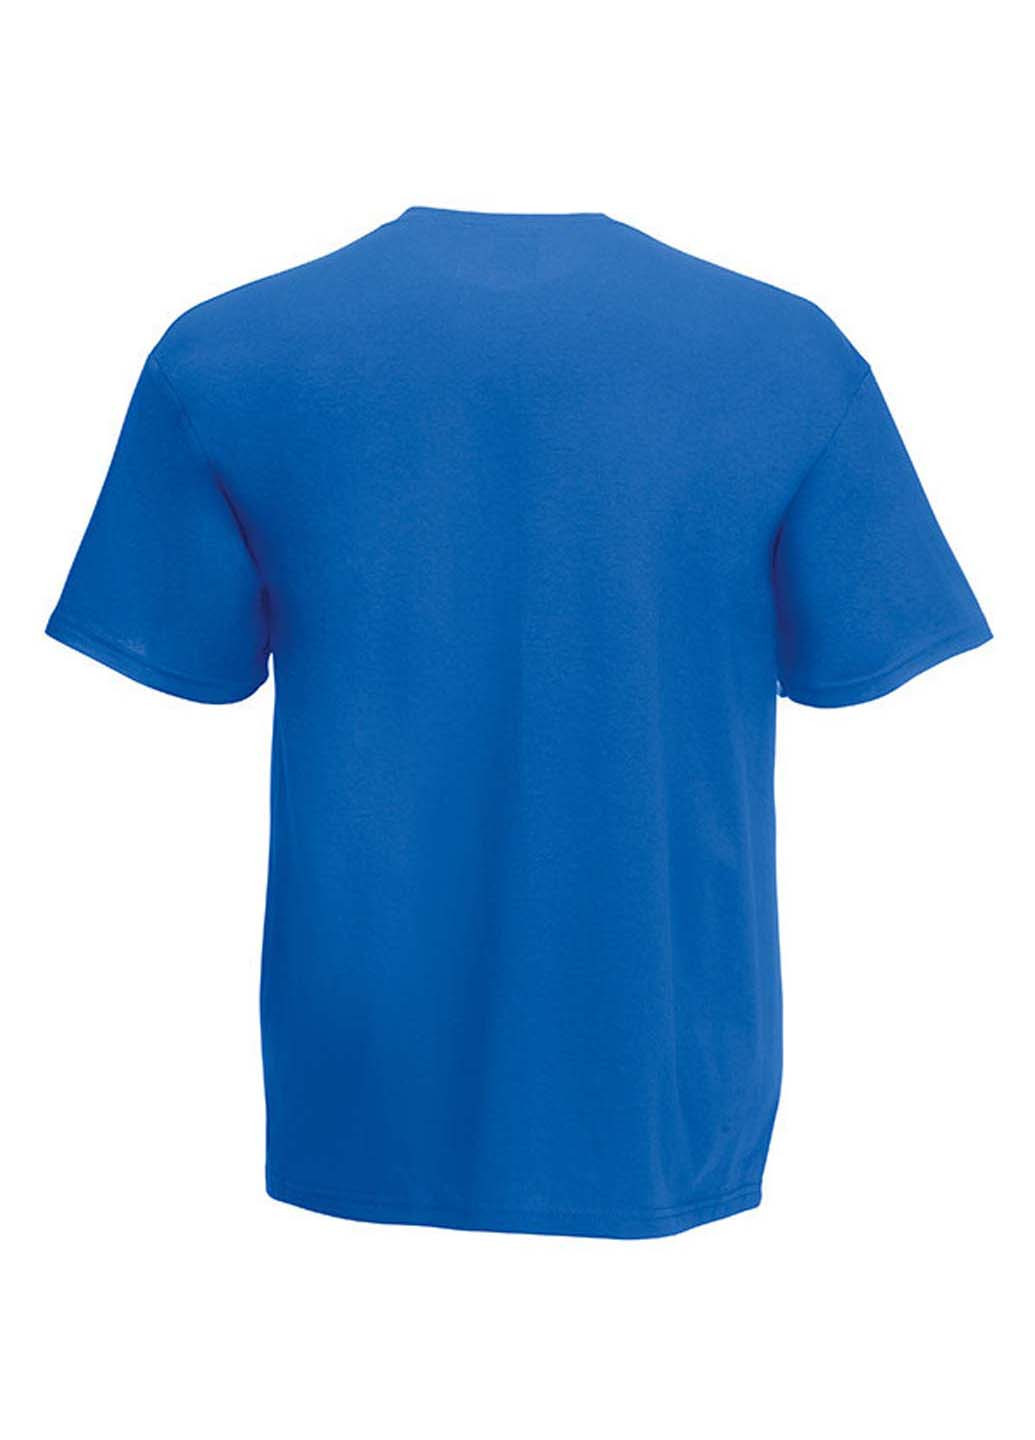 Синя футболка Fruit of the Loom Original T